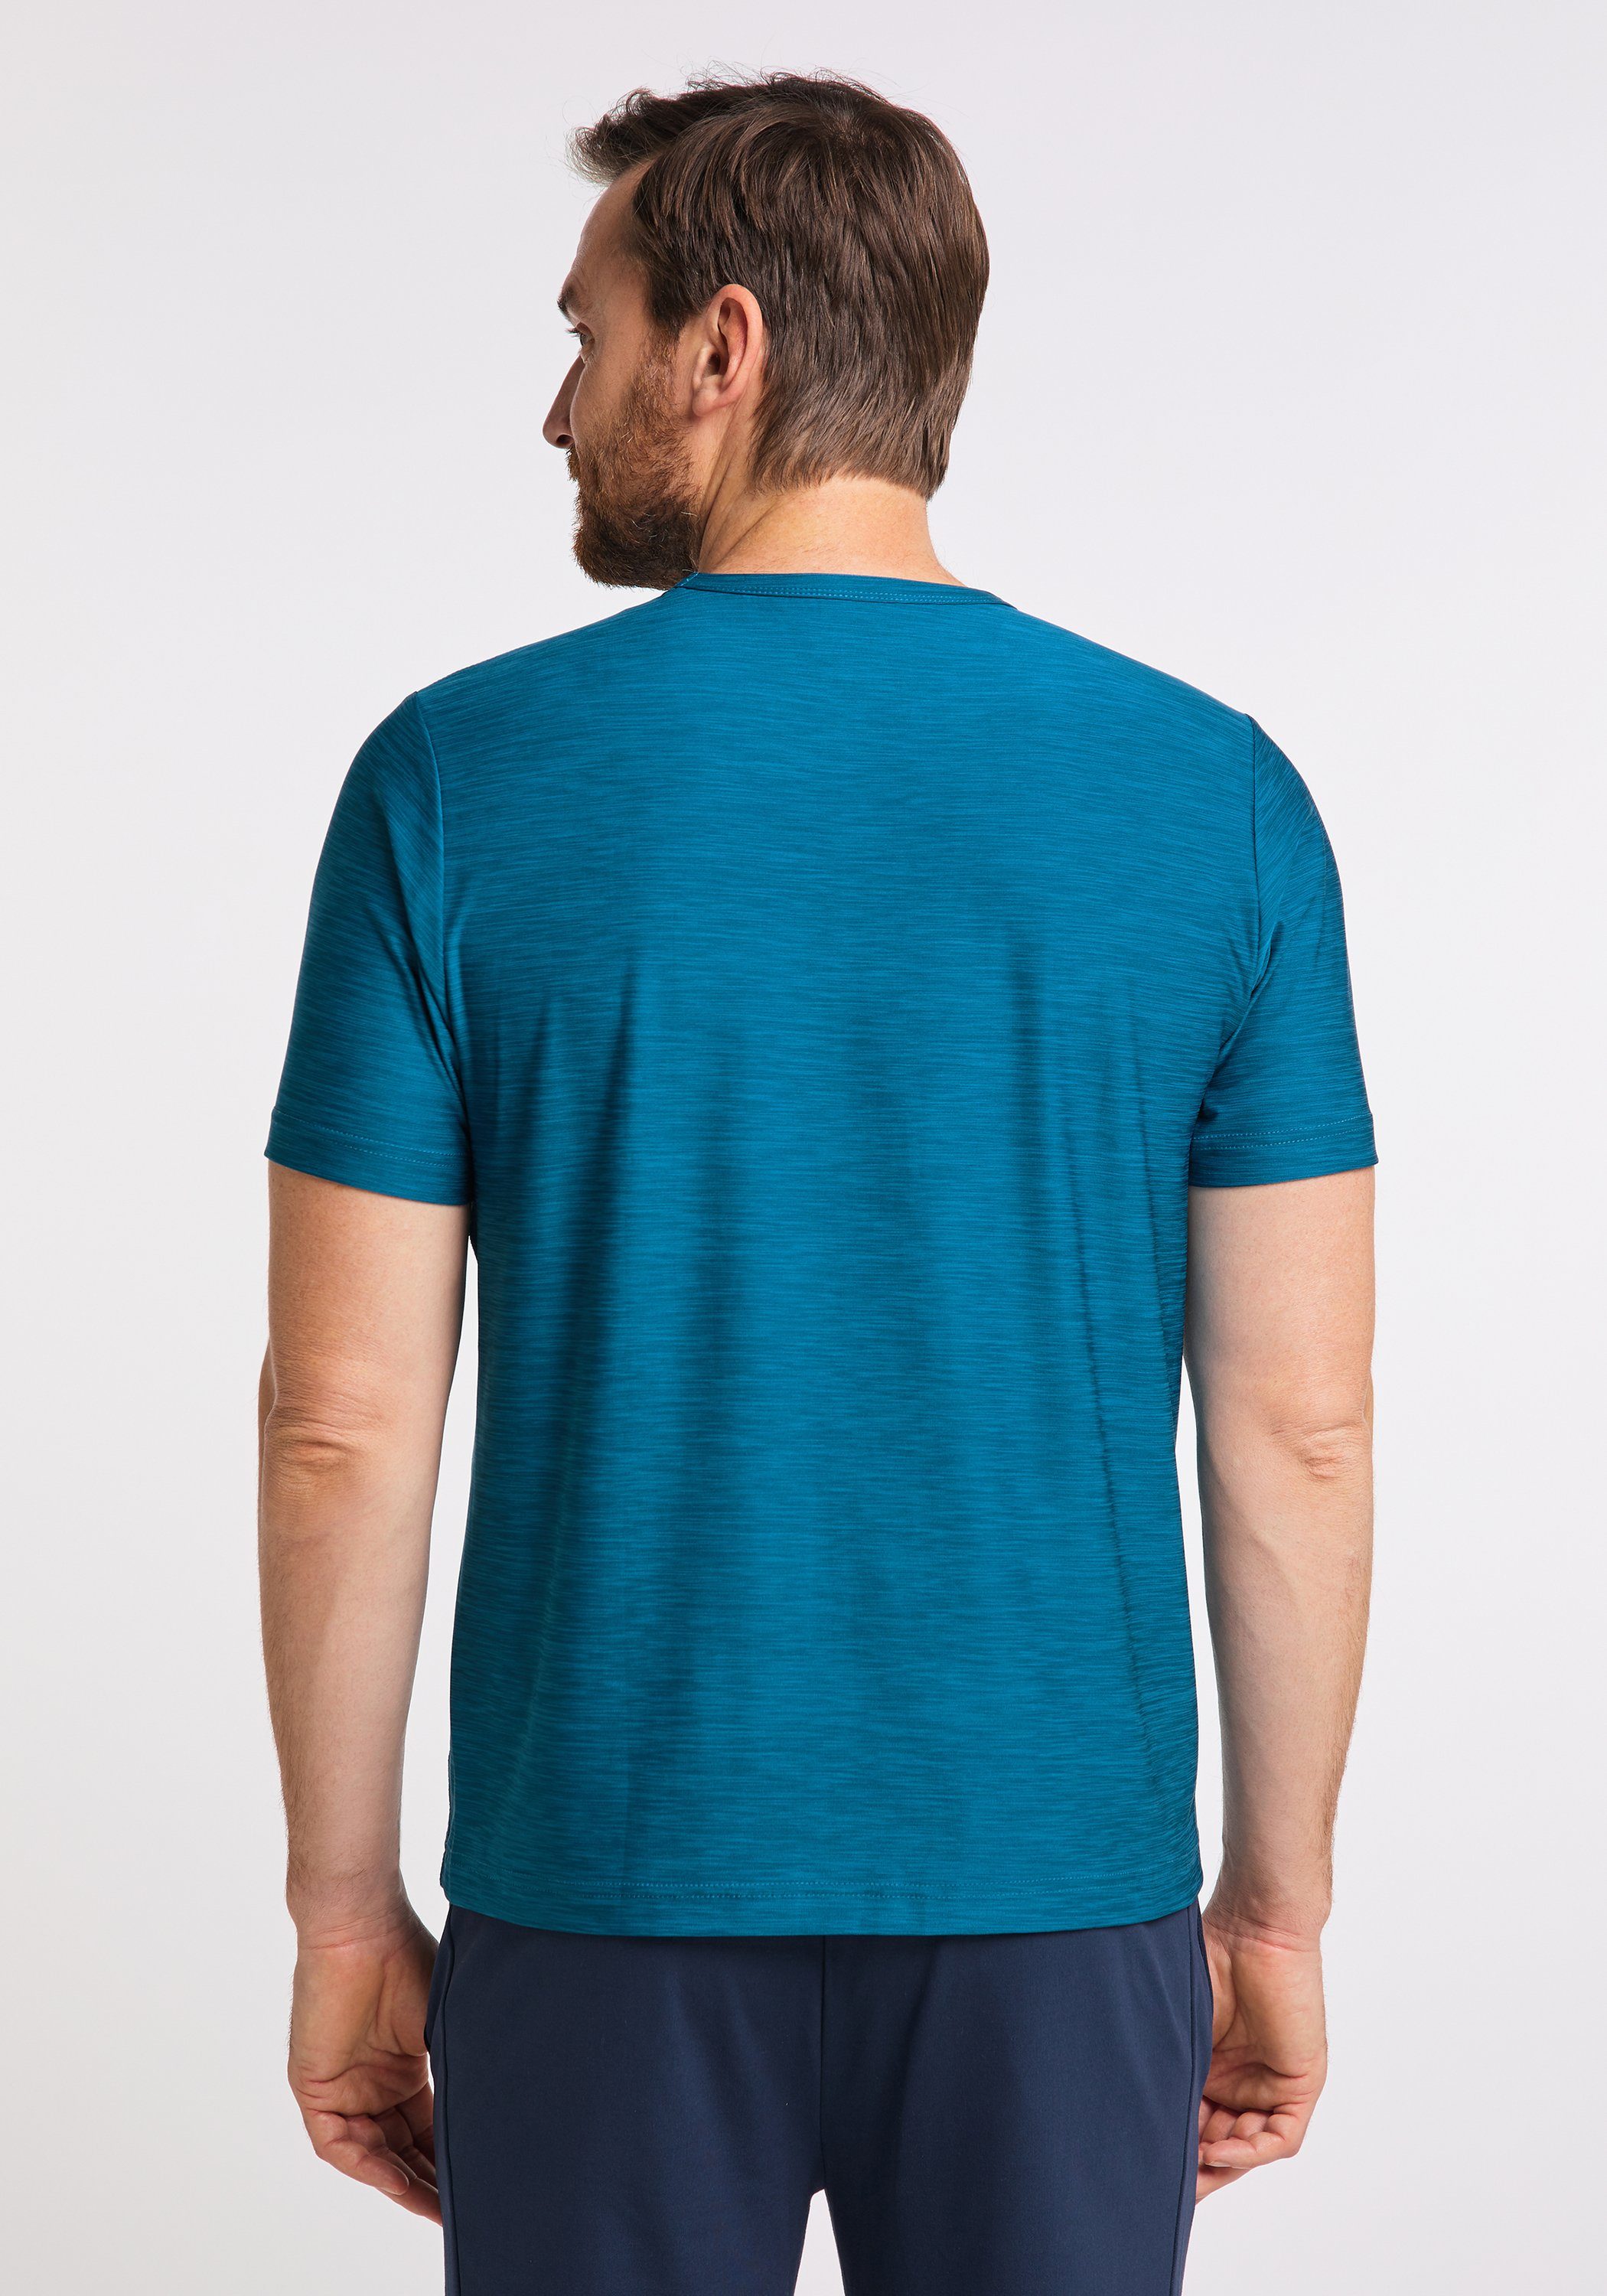 & deep Joy Sportswear T-Shirt melange FUN VITUS T-Shirt turquoise JOY